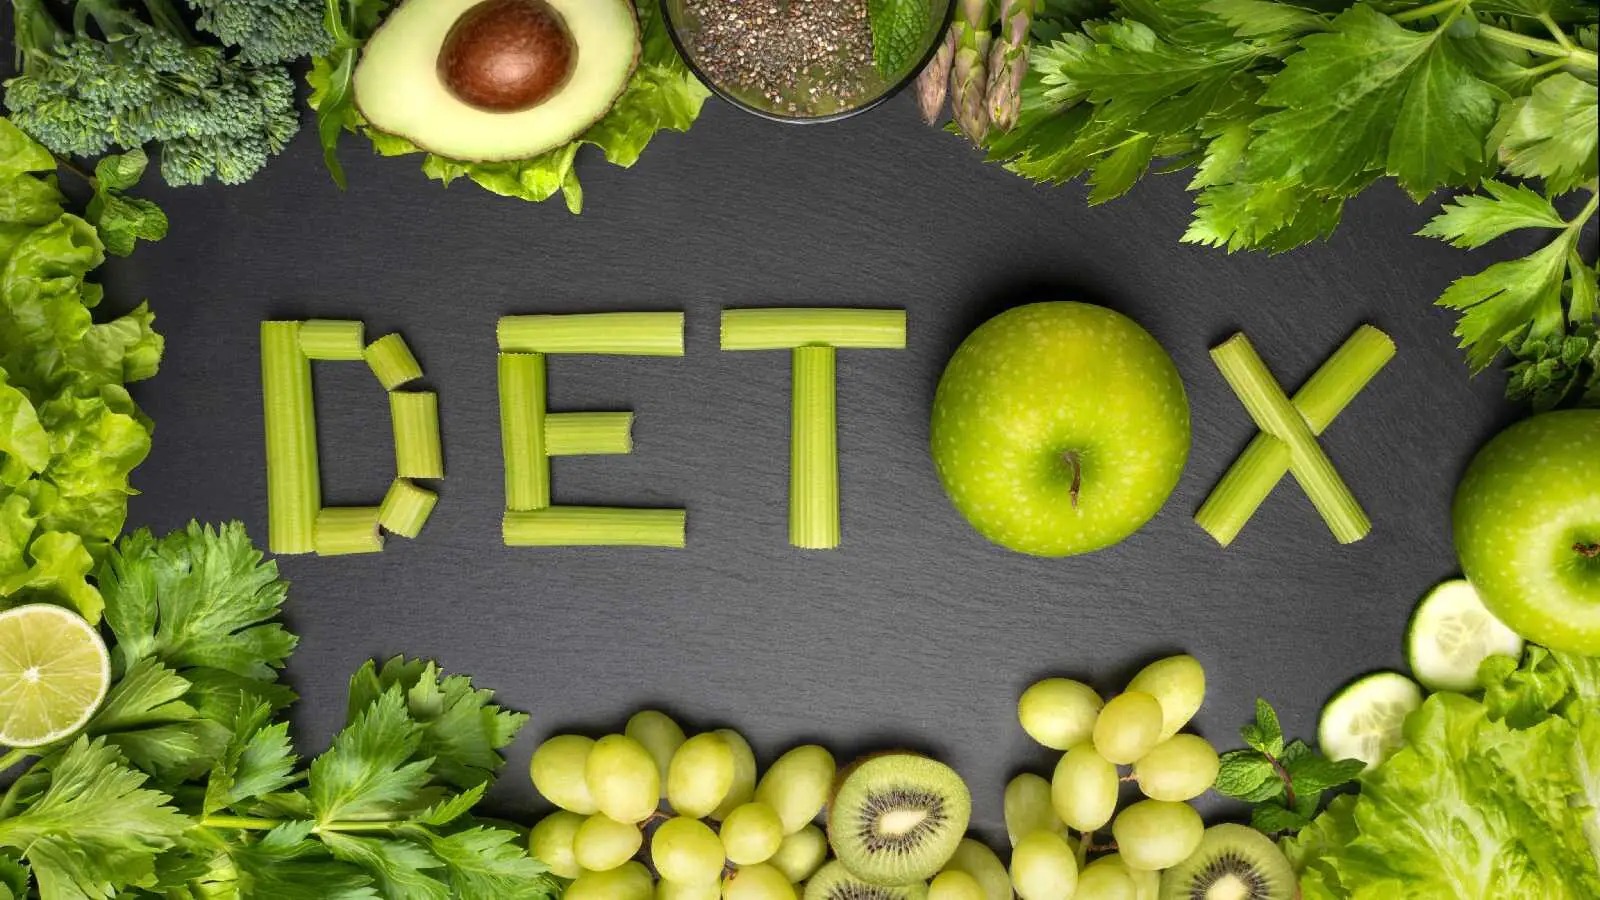 Chế độ ăn Detox và những ưu, nhược điểm mà bạn nên biết 1